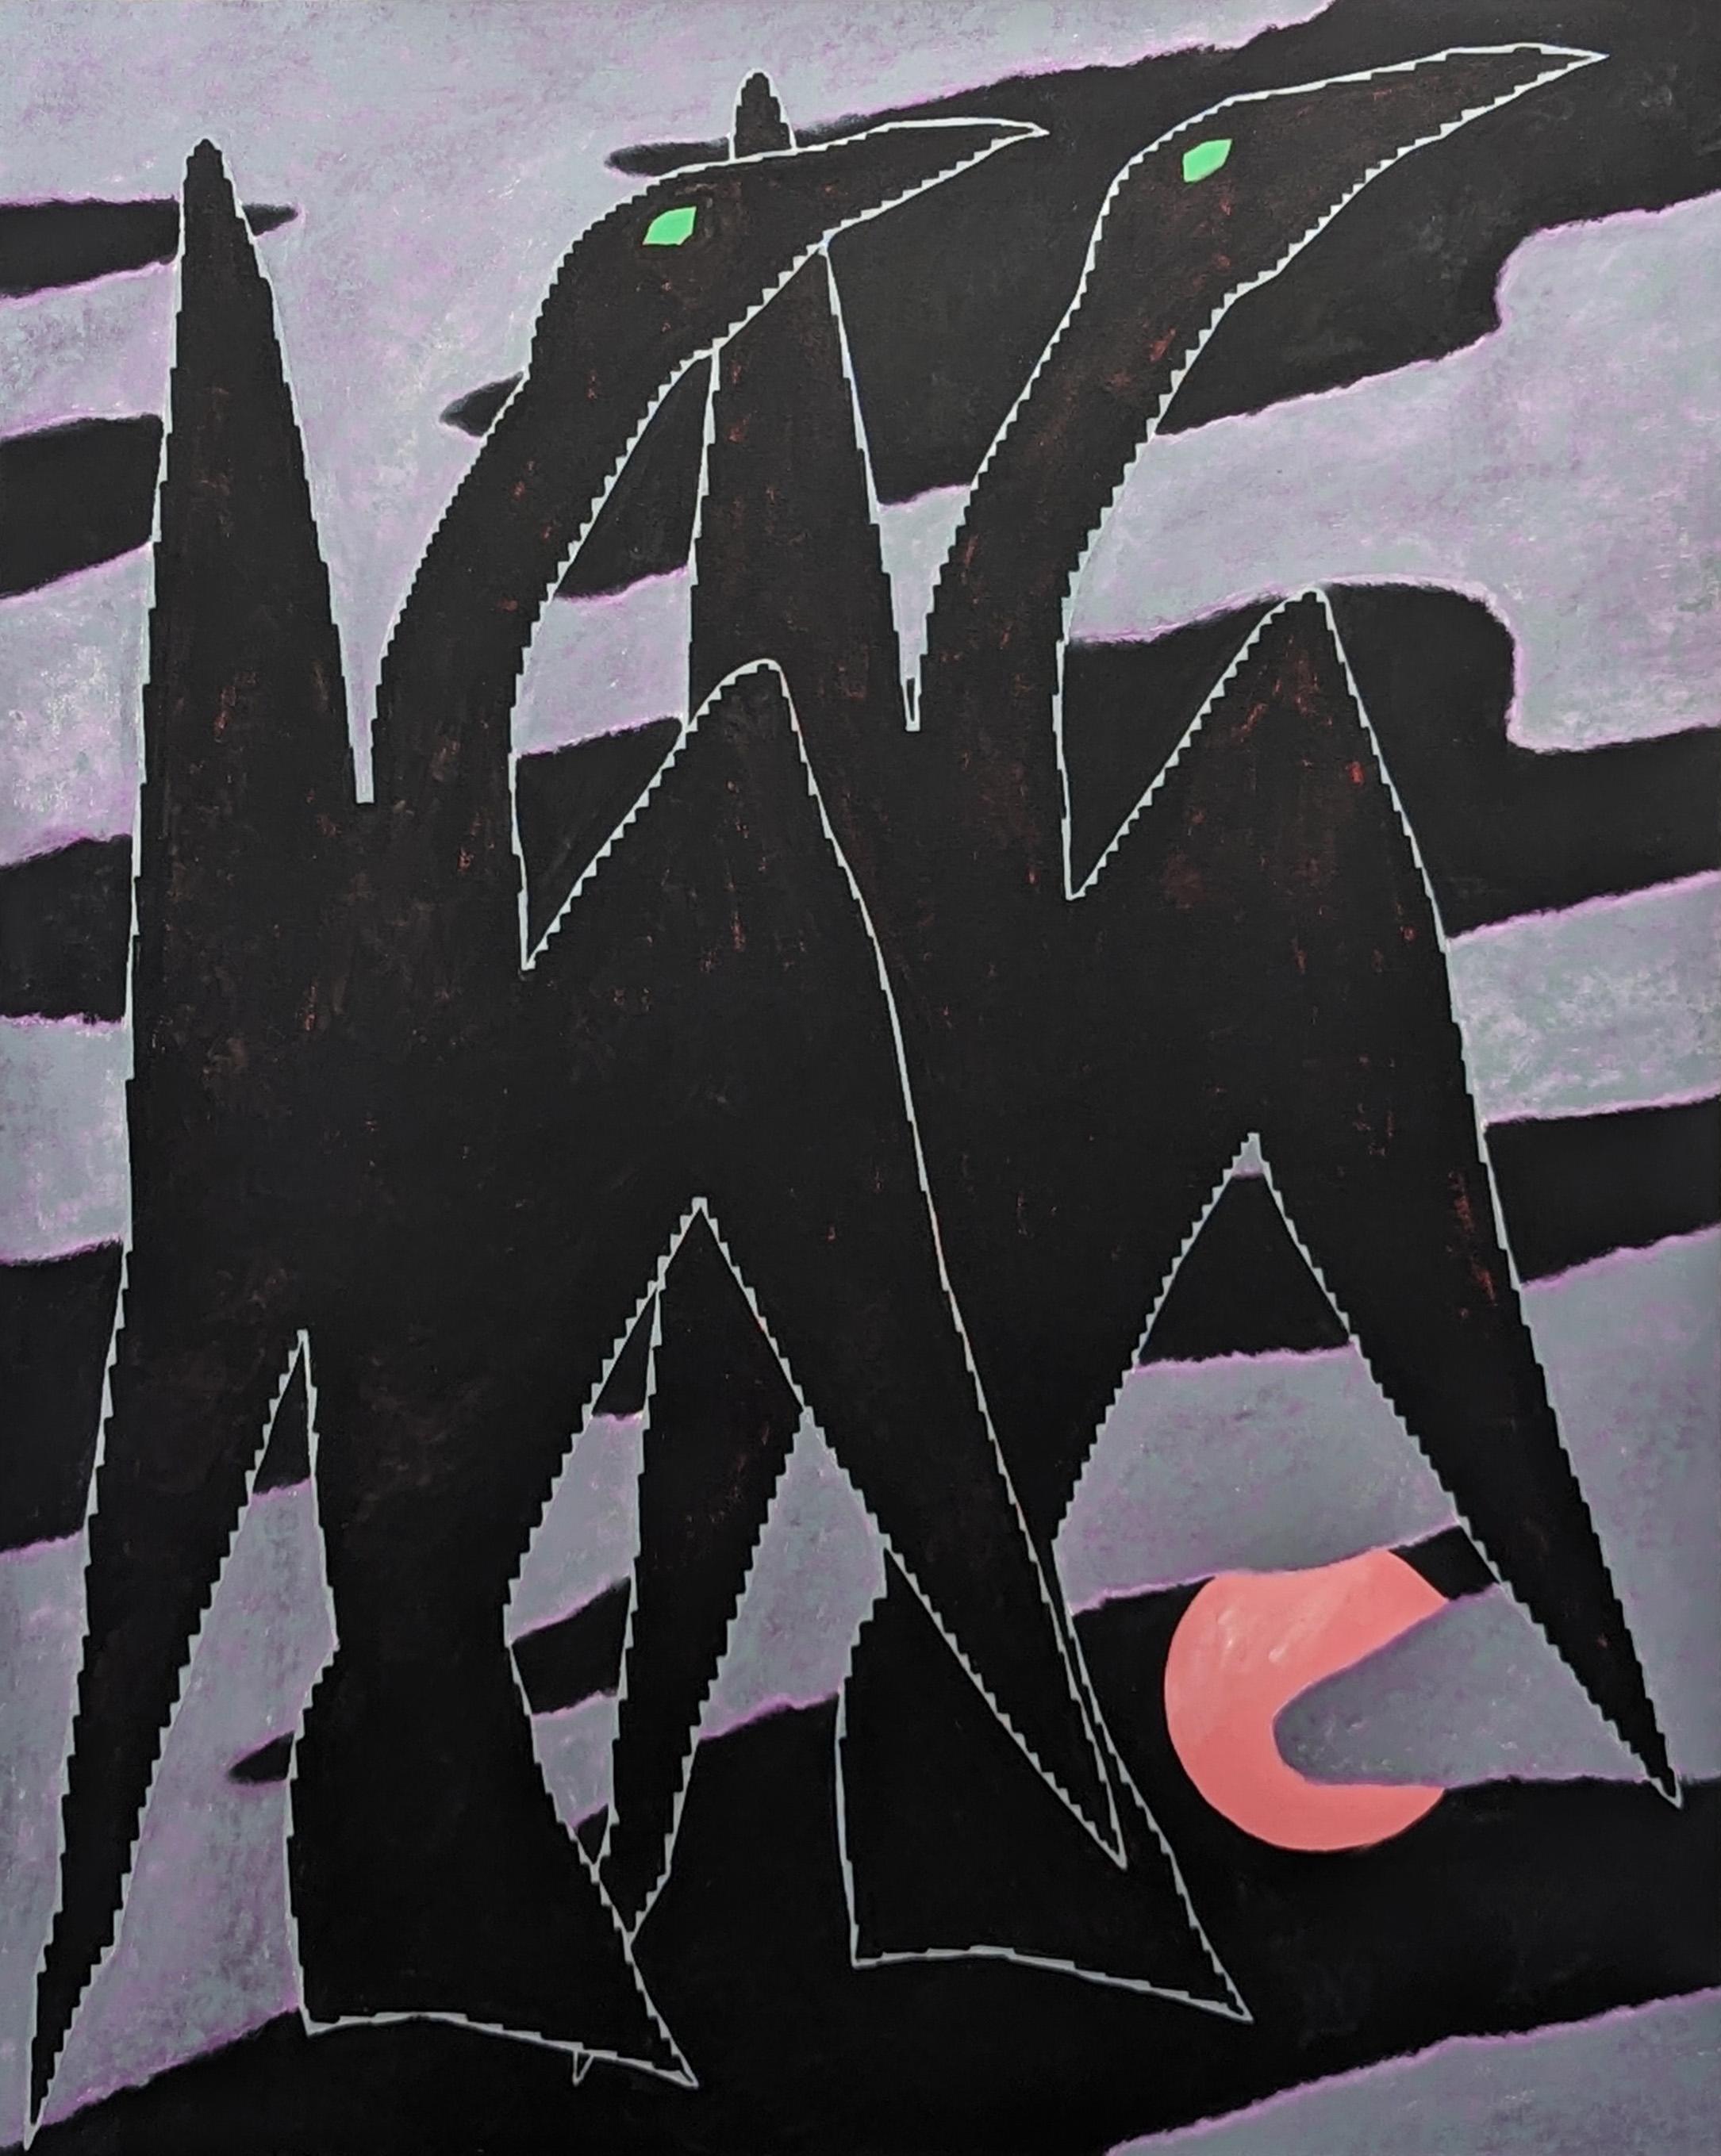 Animal Painting Emmanuel Araujo - "Cormoran" Peinture abstraite géométrique contemporaine d'oiseaux violets et noirs